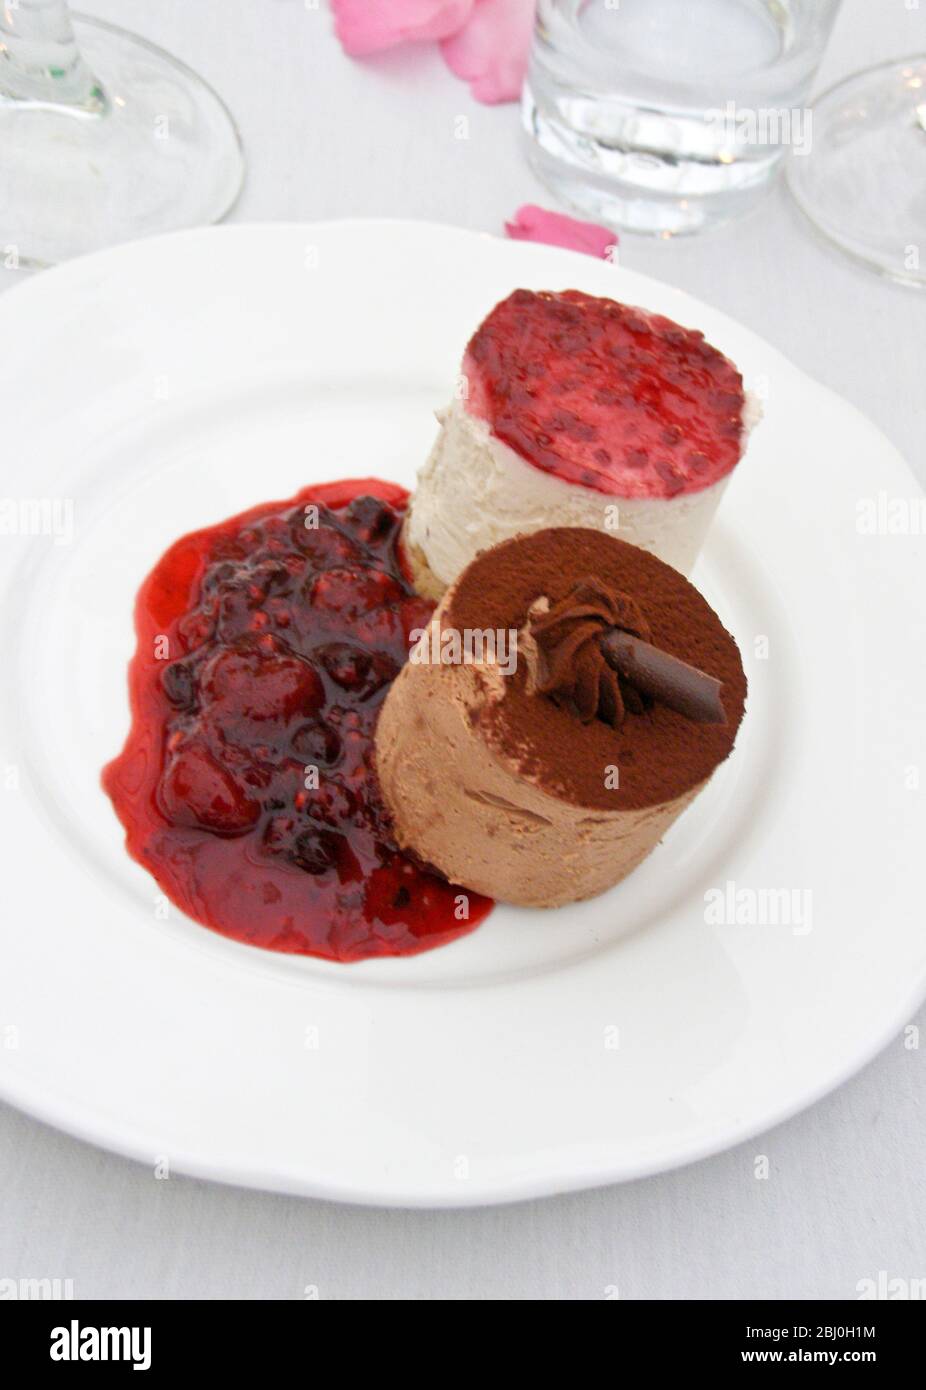 Mousse di cioccolato e vaniglia con coulis di frutta estiva - dessert al ricevimento di nozze - Foto Stock